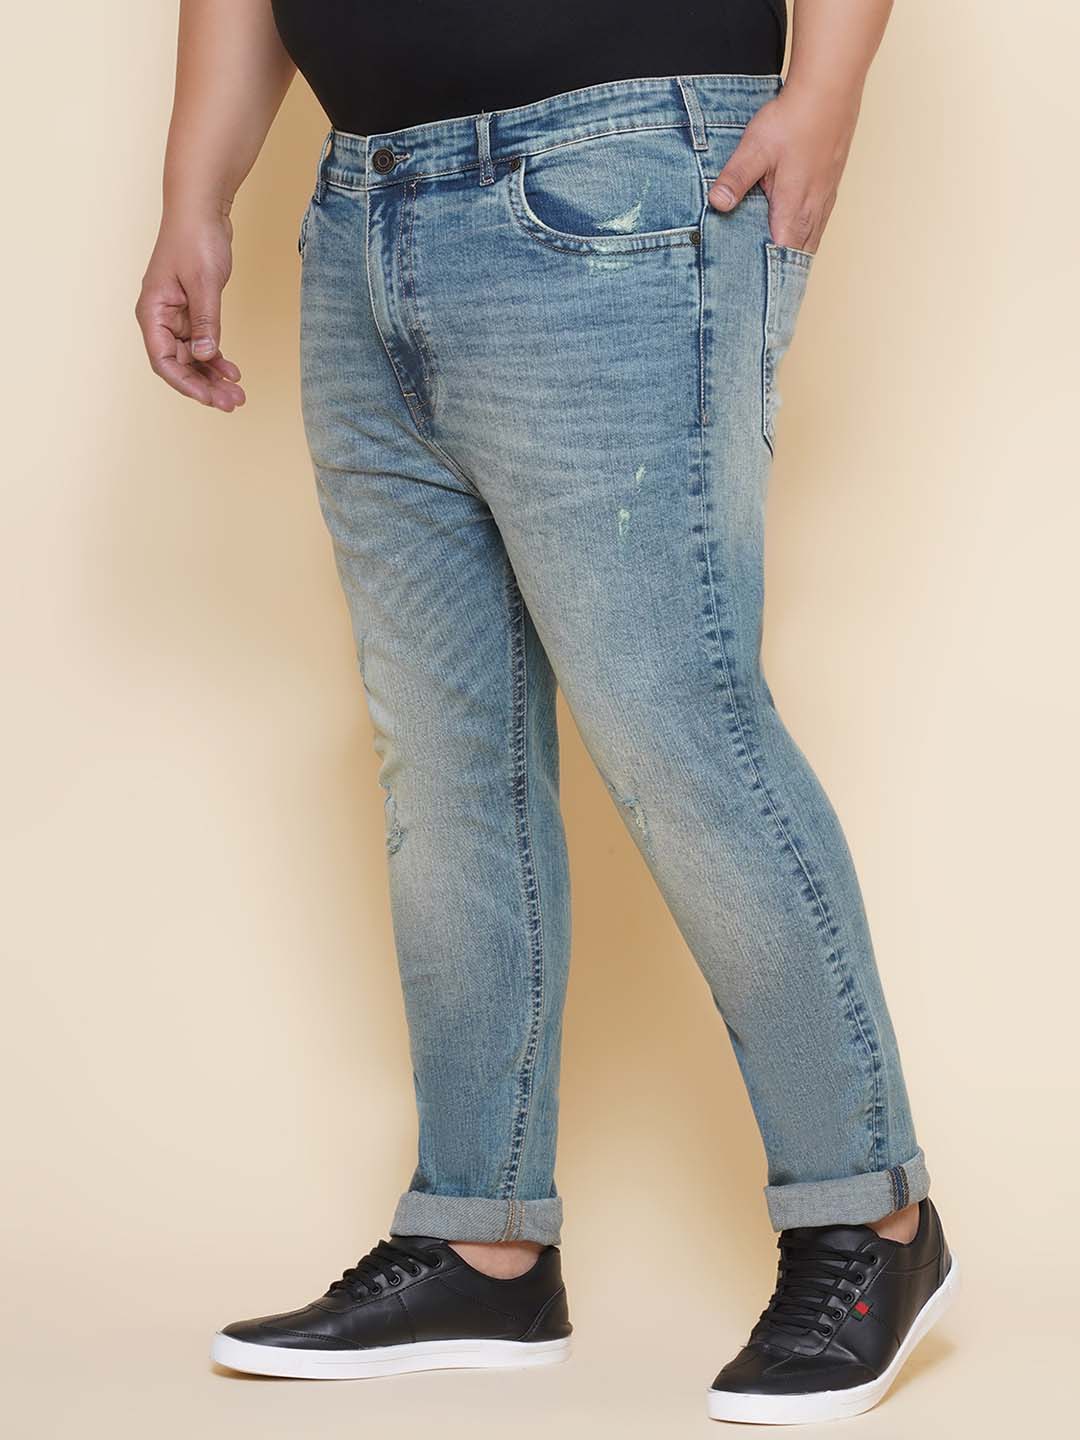 bottomwear/jeans/JPJ27107/jpj27107-4.jpg